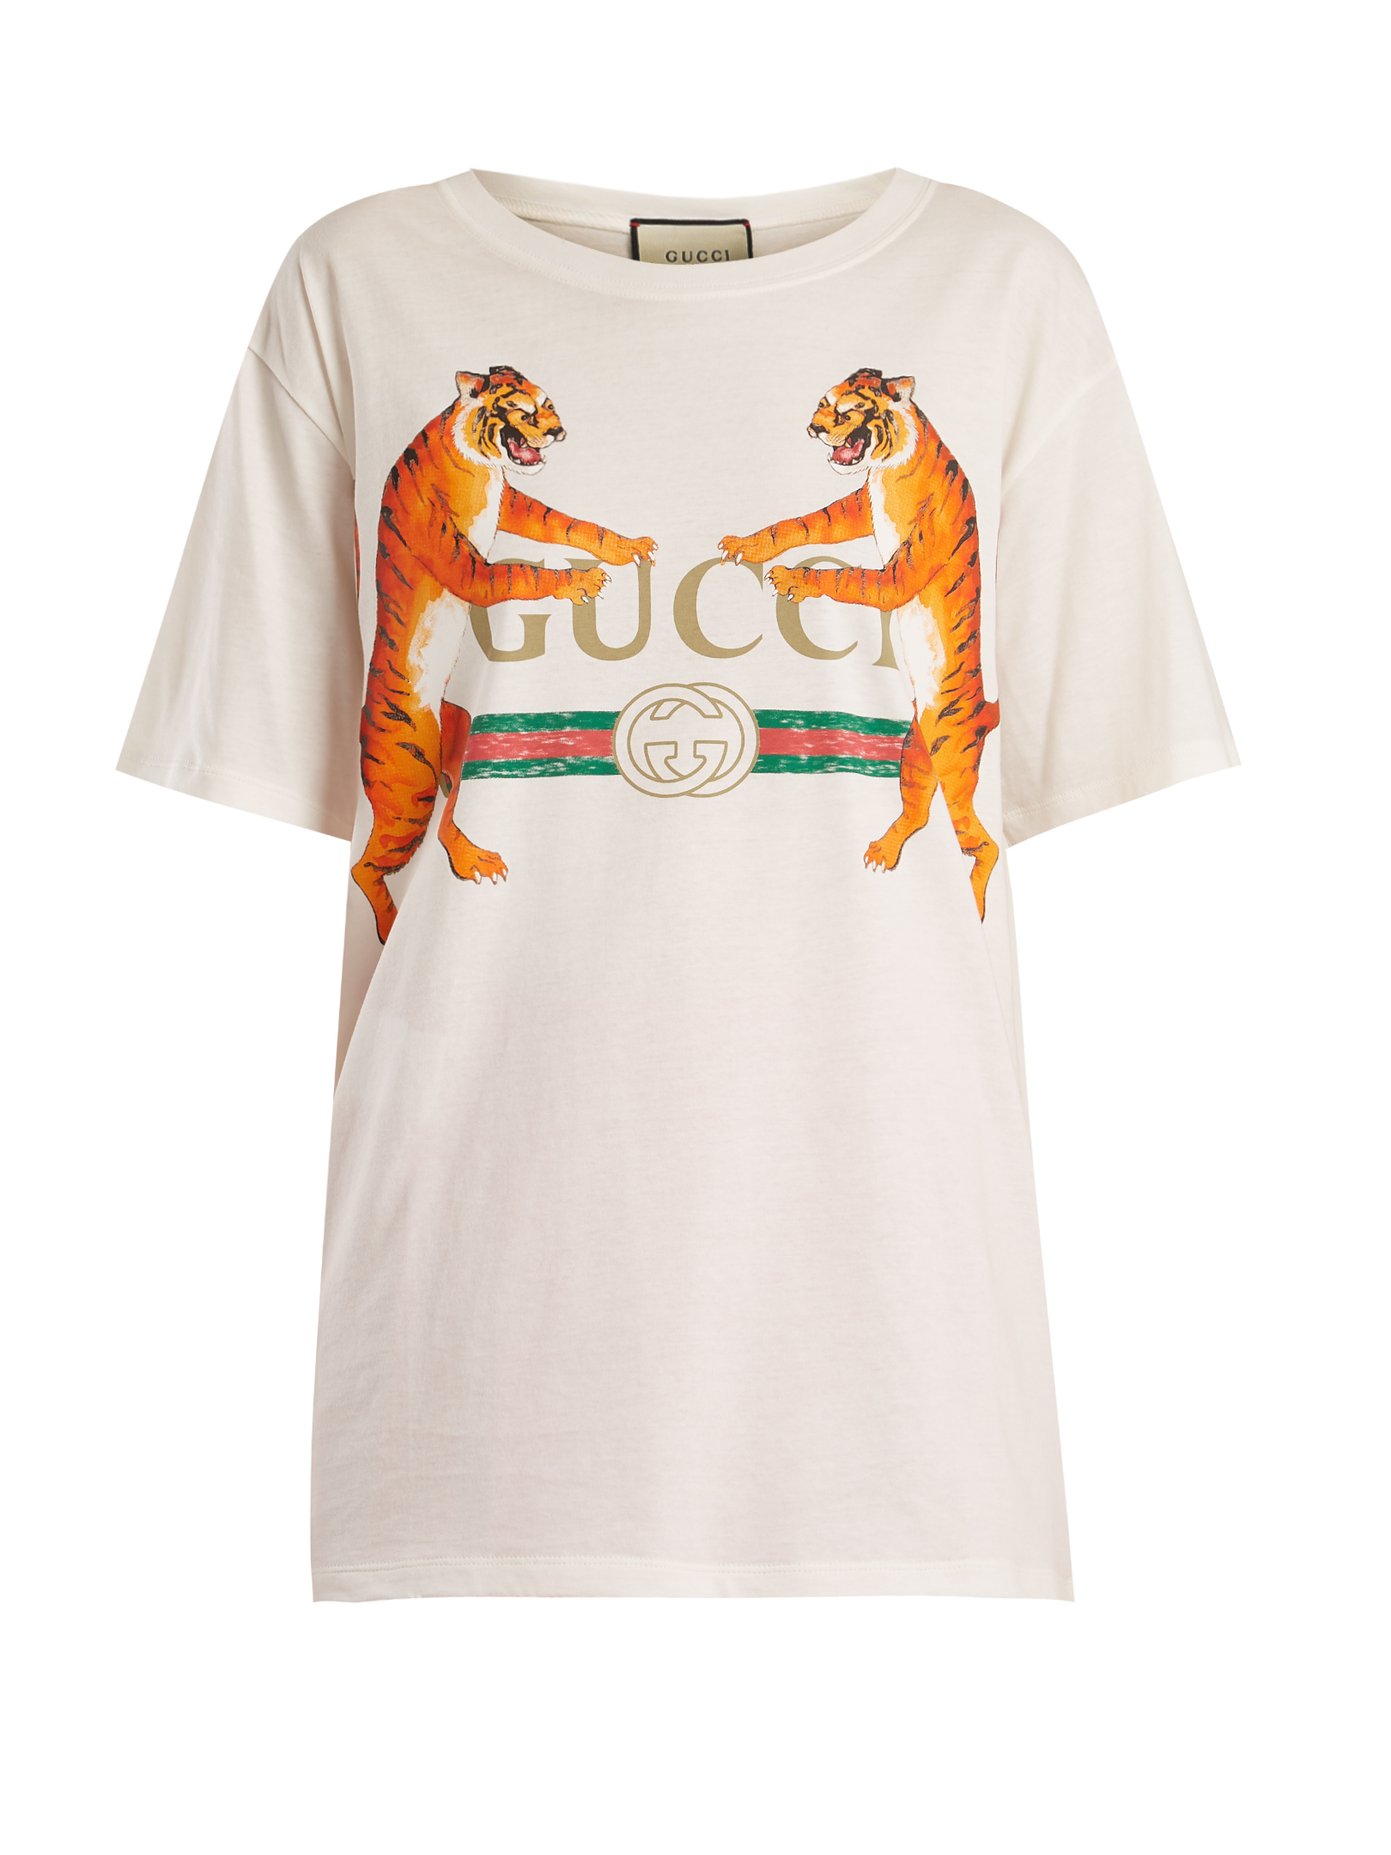 Gucci Tiger Print Shirt Flash Sales, 51% OFF | espirituviajero.com